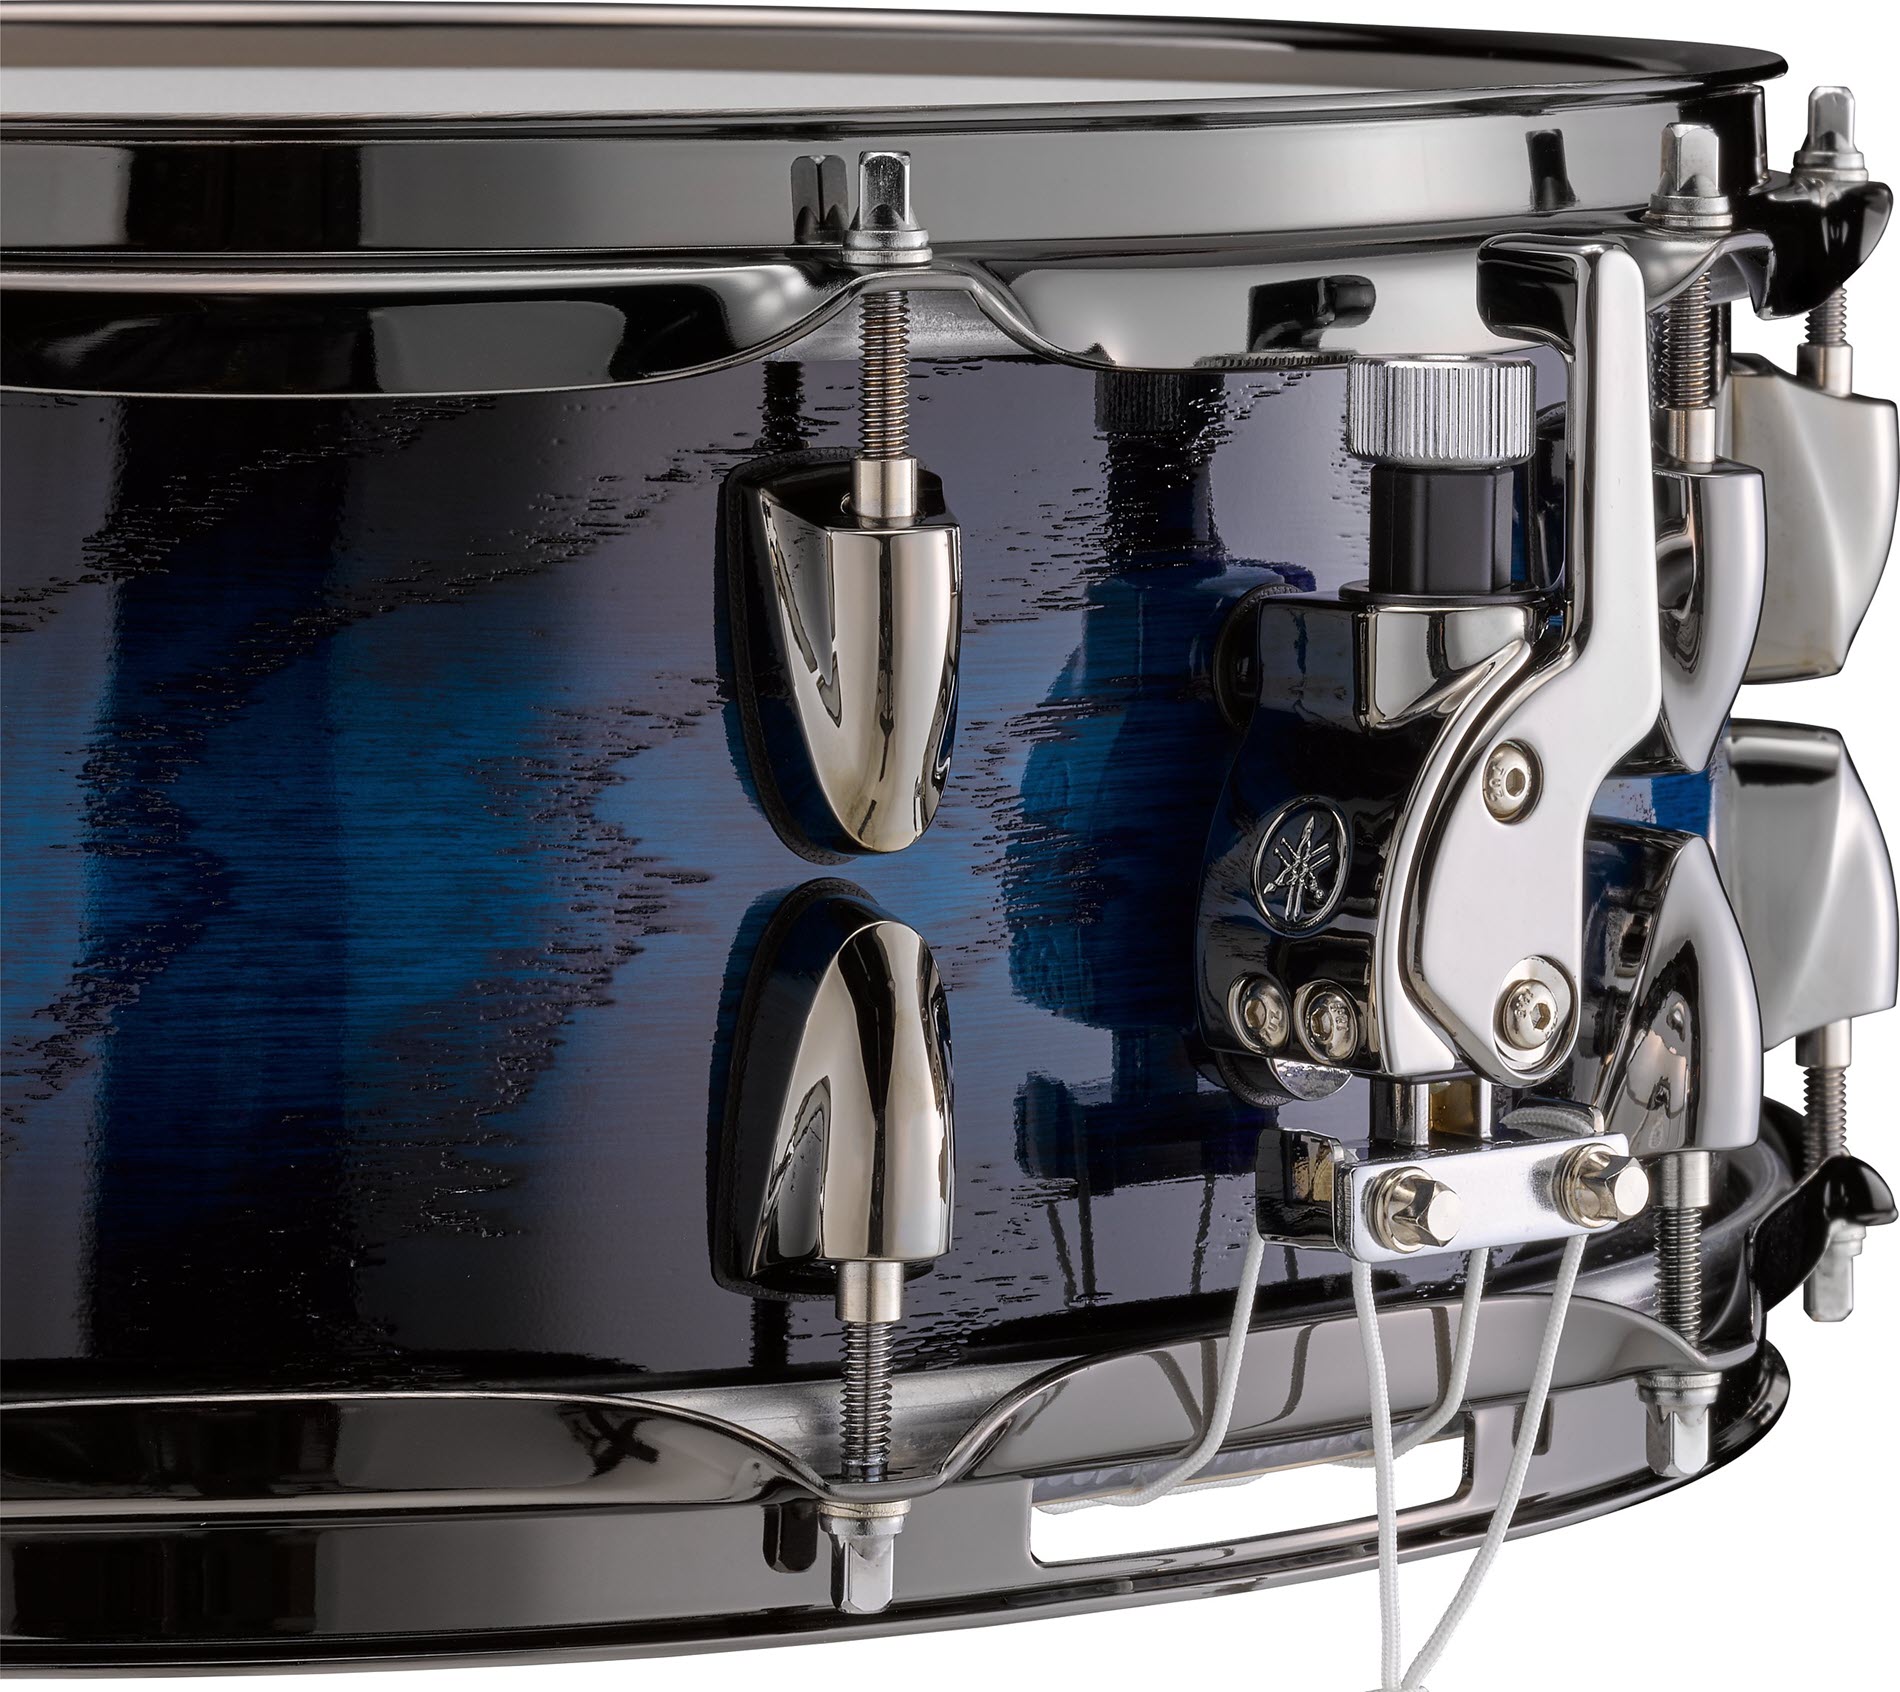 Closeup of snare drum lever.